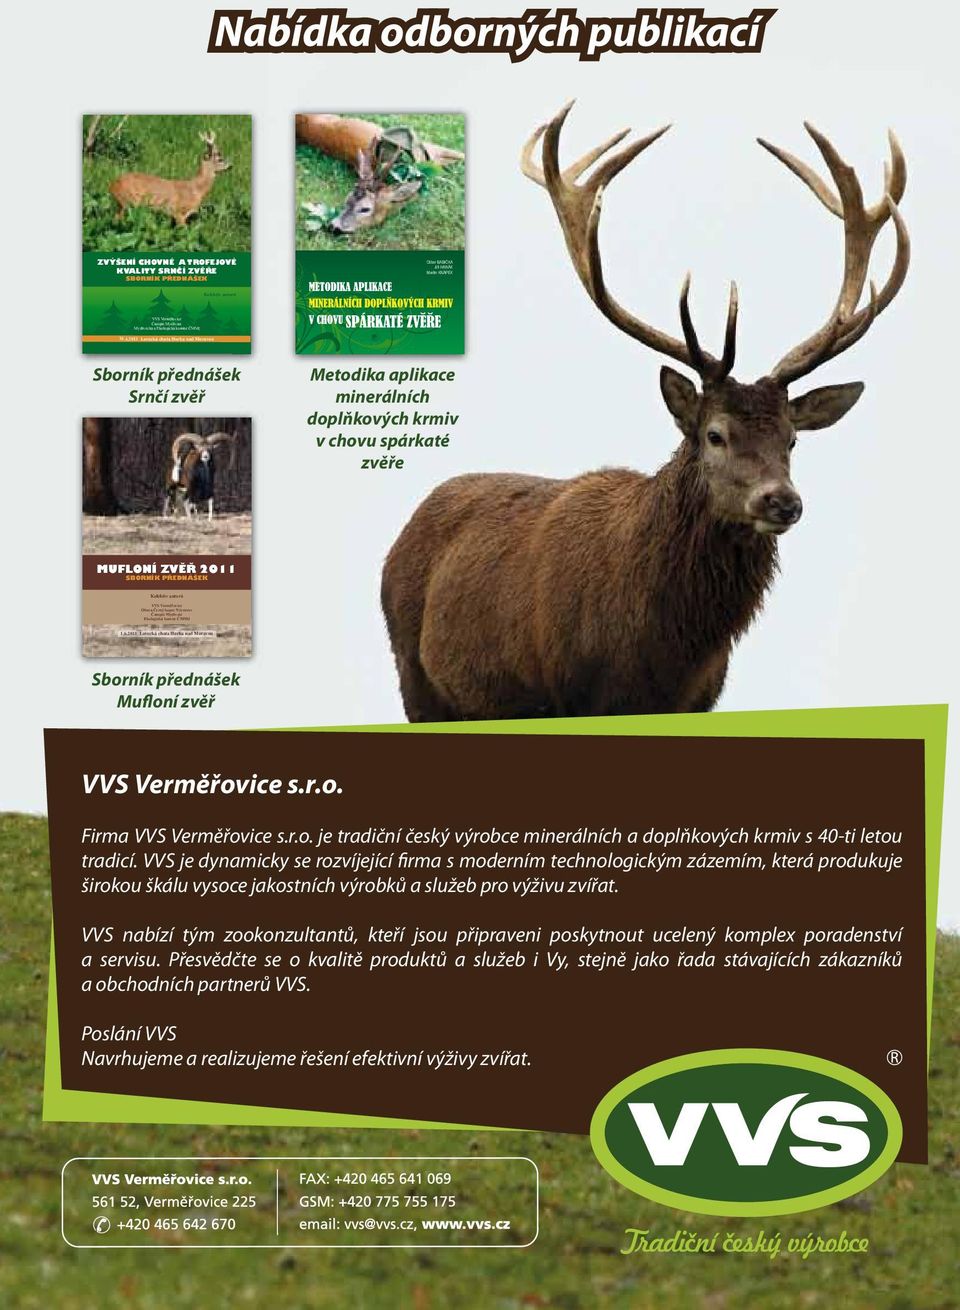 VVS je dynamicky se rozvíjející firma s moderním technologickým zázemím, která produkuje širokou škálu vysoce jakostních výrobků a služeb pro výživu zvířat.